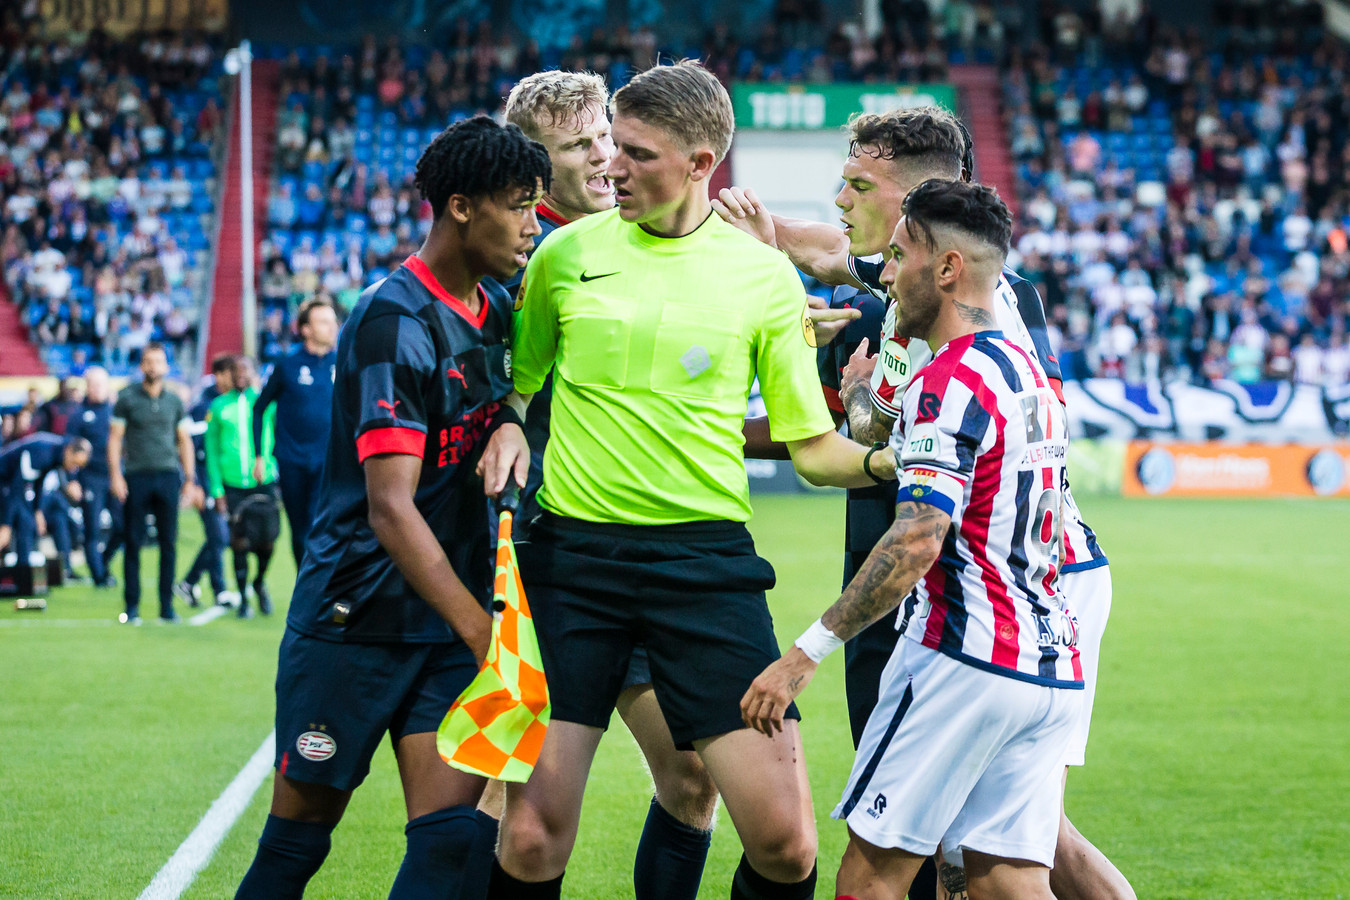 Jong PSV tegen Willem II was een stevig potje. Hier is Livano Comenencia het niet eens met een arbitrale beslissing.